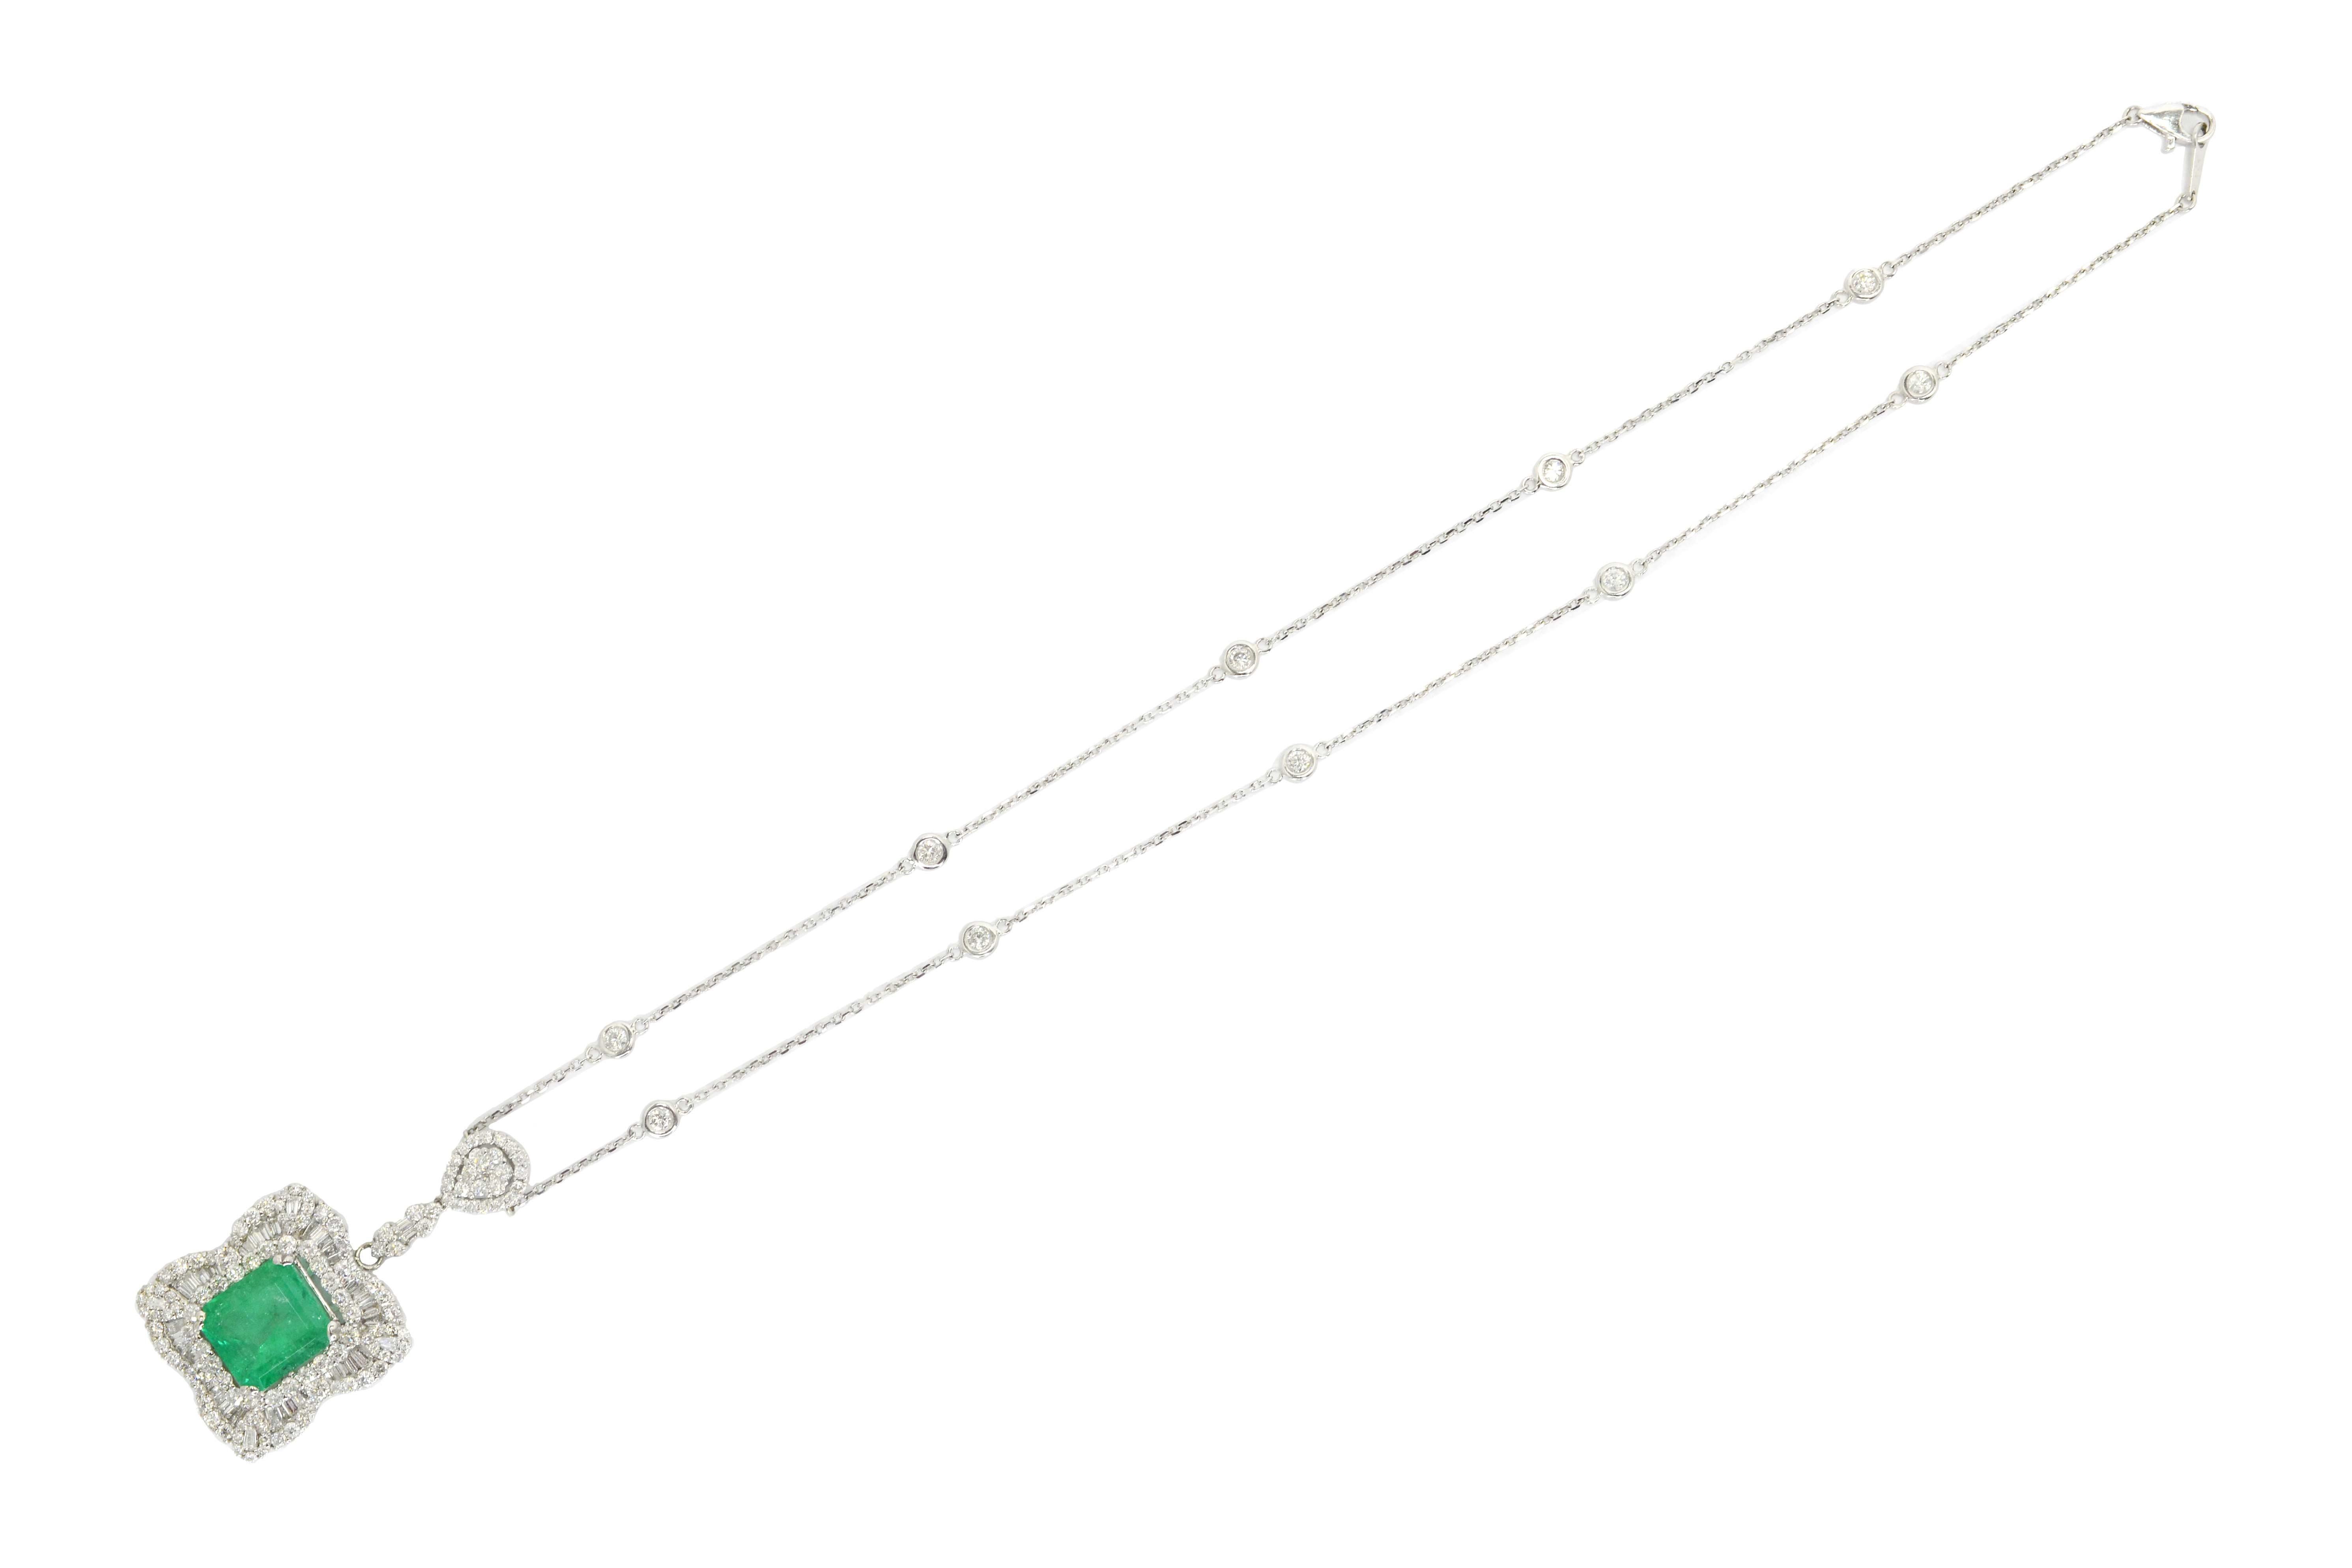 Elegant Estate Emerald & Diamond Pendant Necklace Over 10 Carats In Good Condition For Sale In Santa Barbara, CA